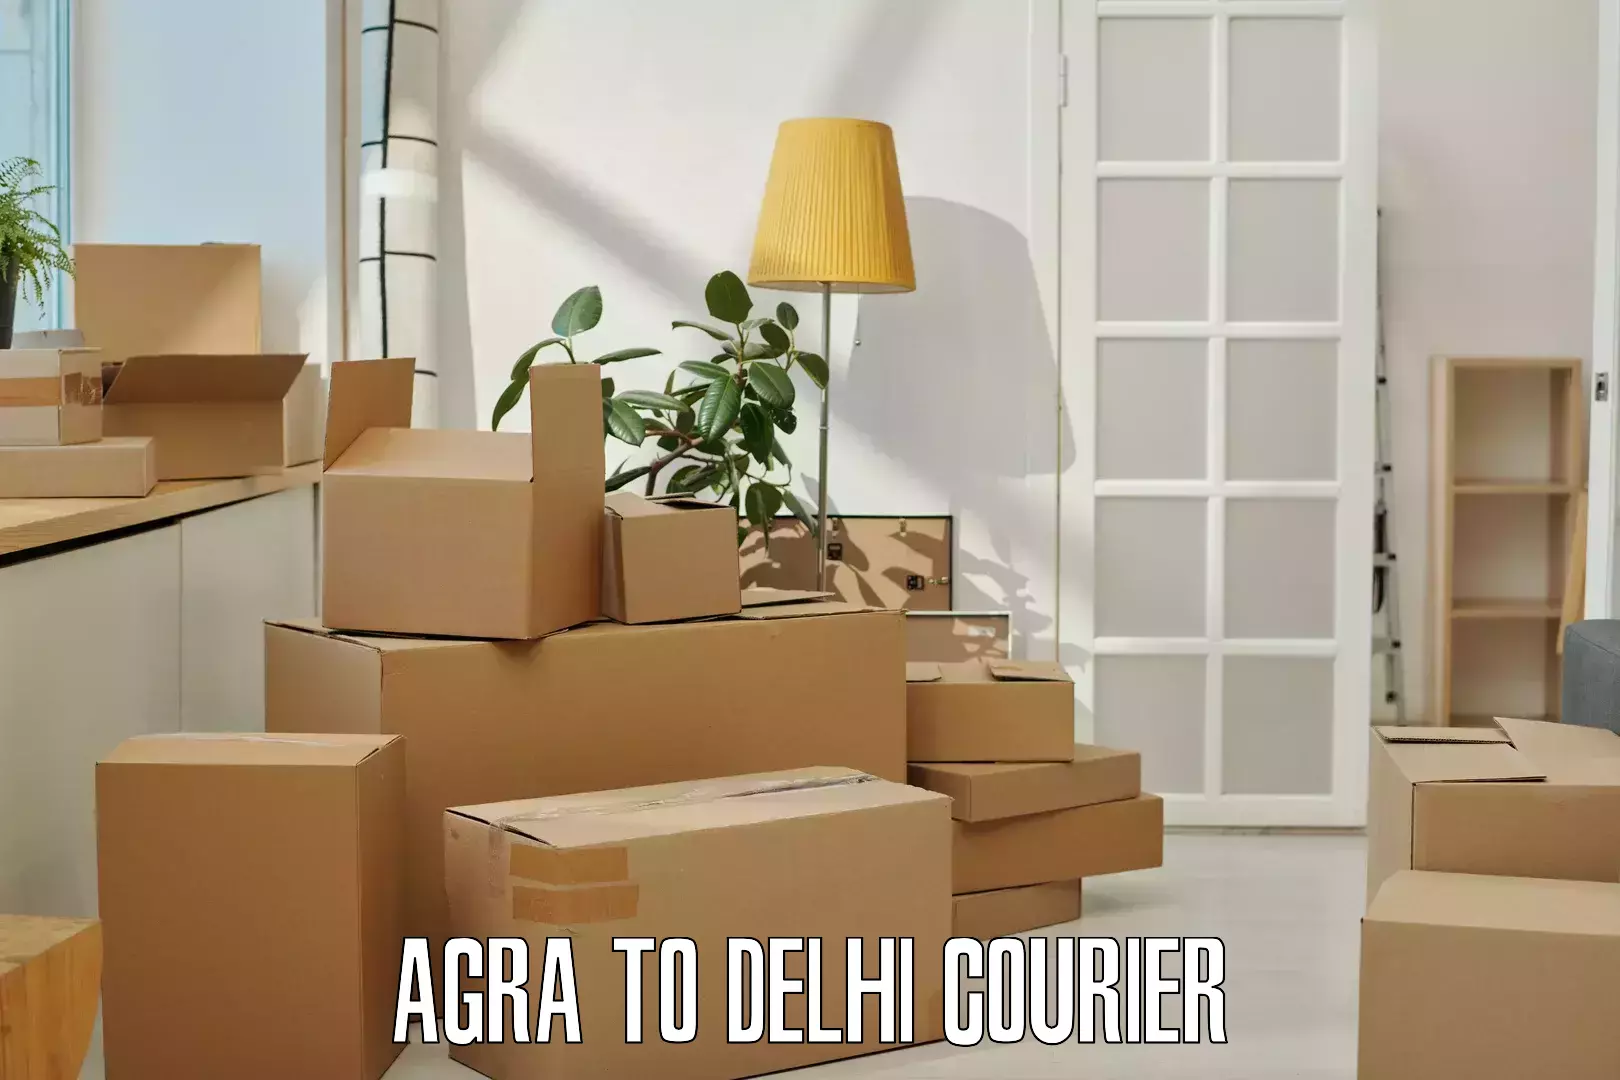 Multi-national courier services Agra to Jamia Millia Islamia New Delhi